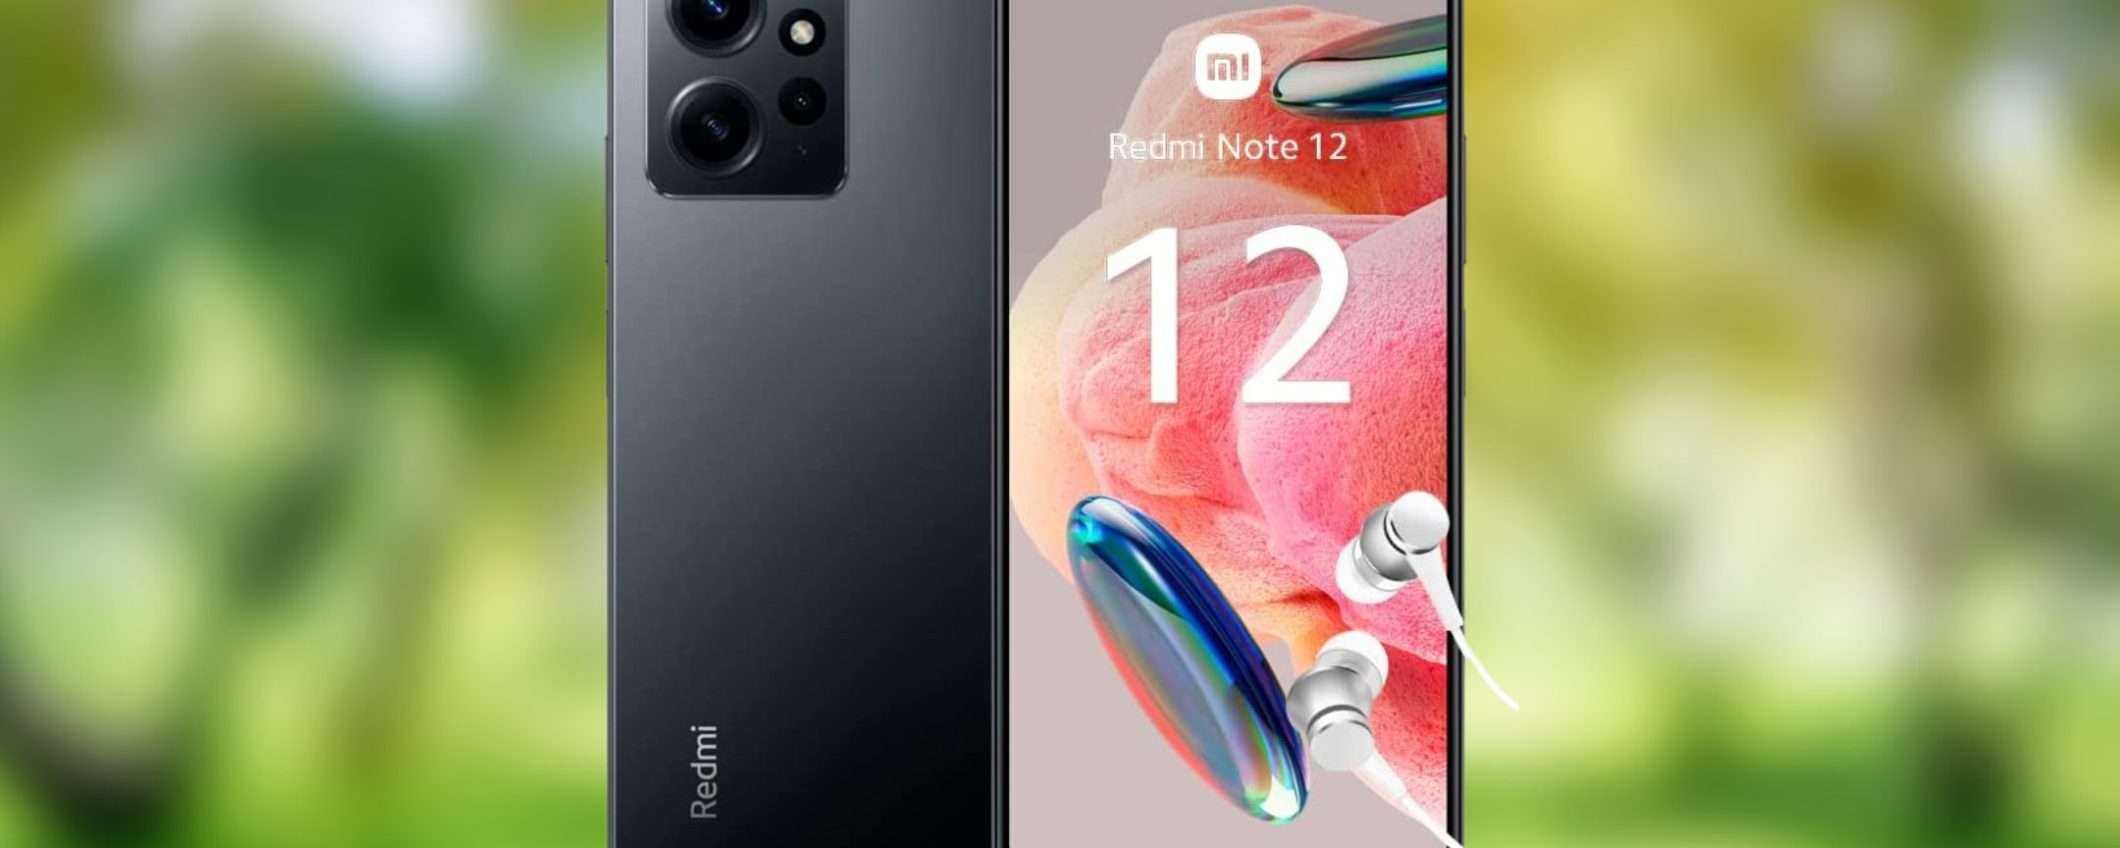 Il Xiaomi Redmi Note 12 è disponibile ad un ottimo prezzo su Amazon